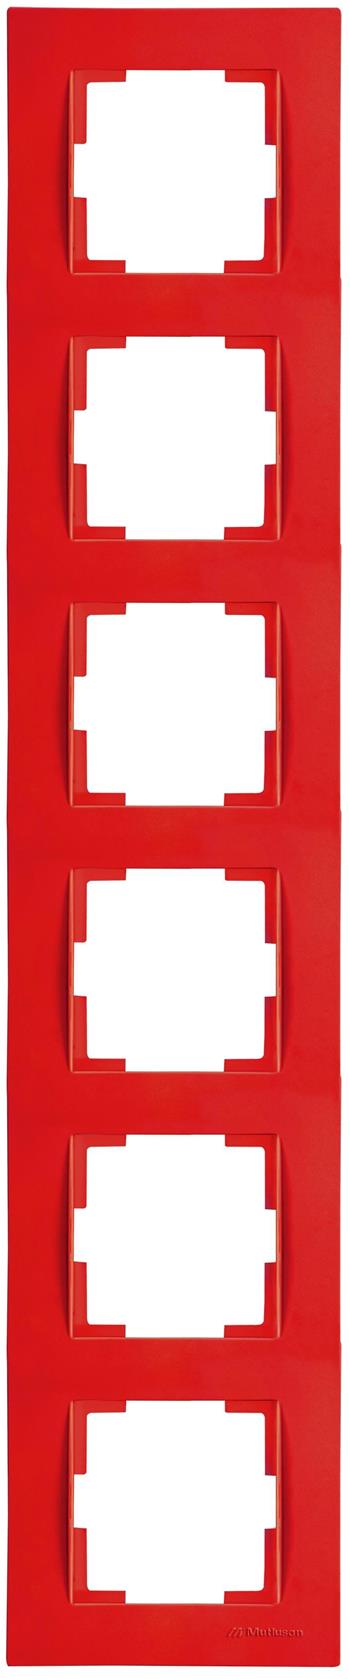 6fach Rahmen vertikal Rot (RITA Pastell Farben)